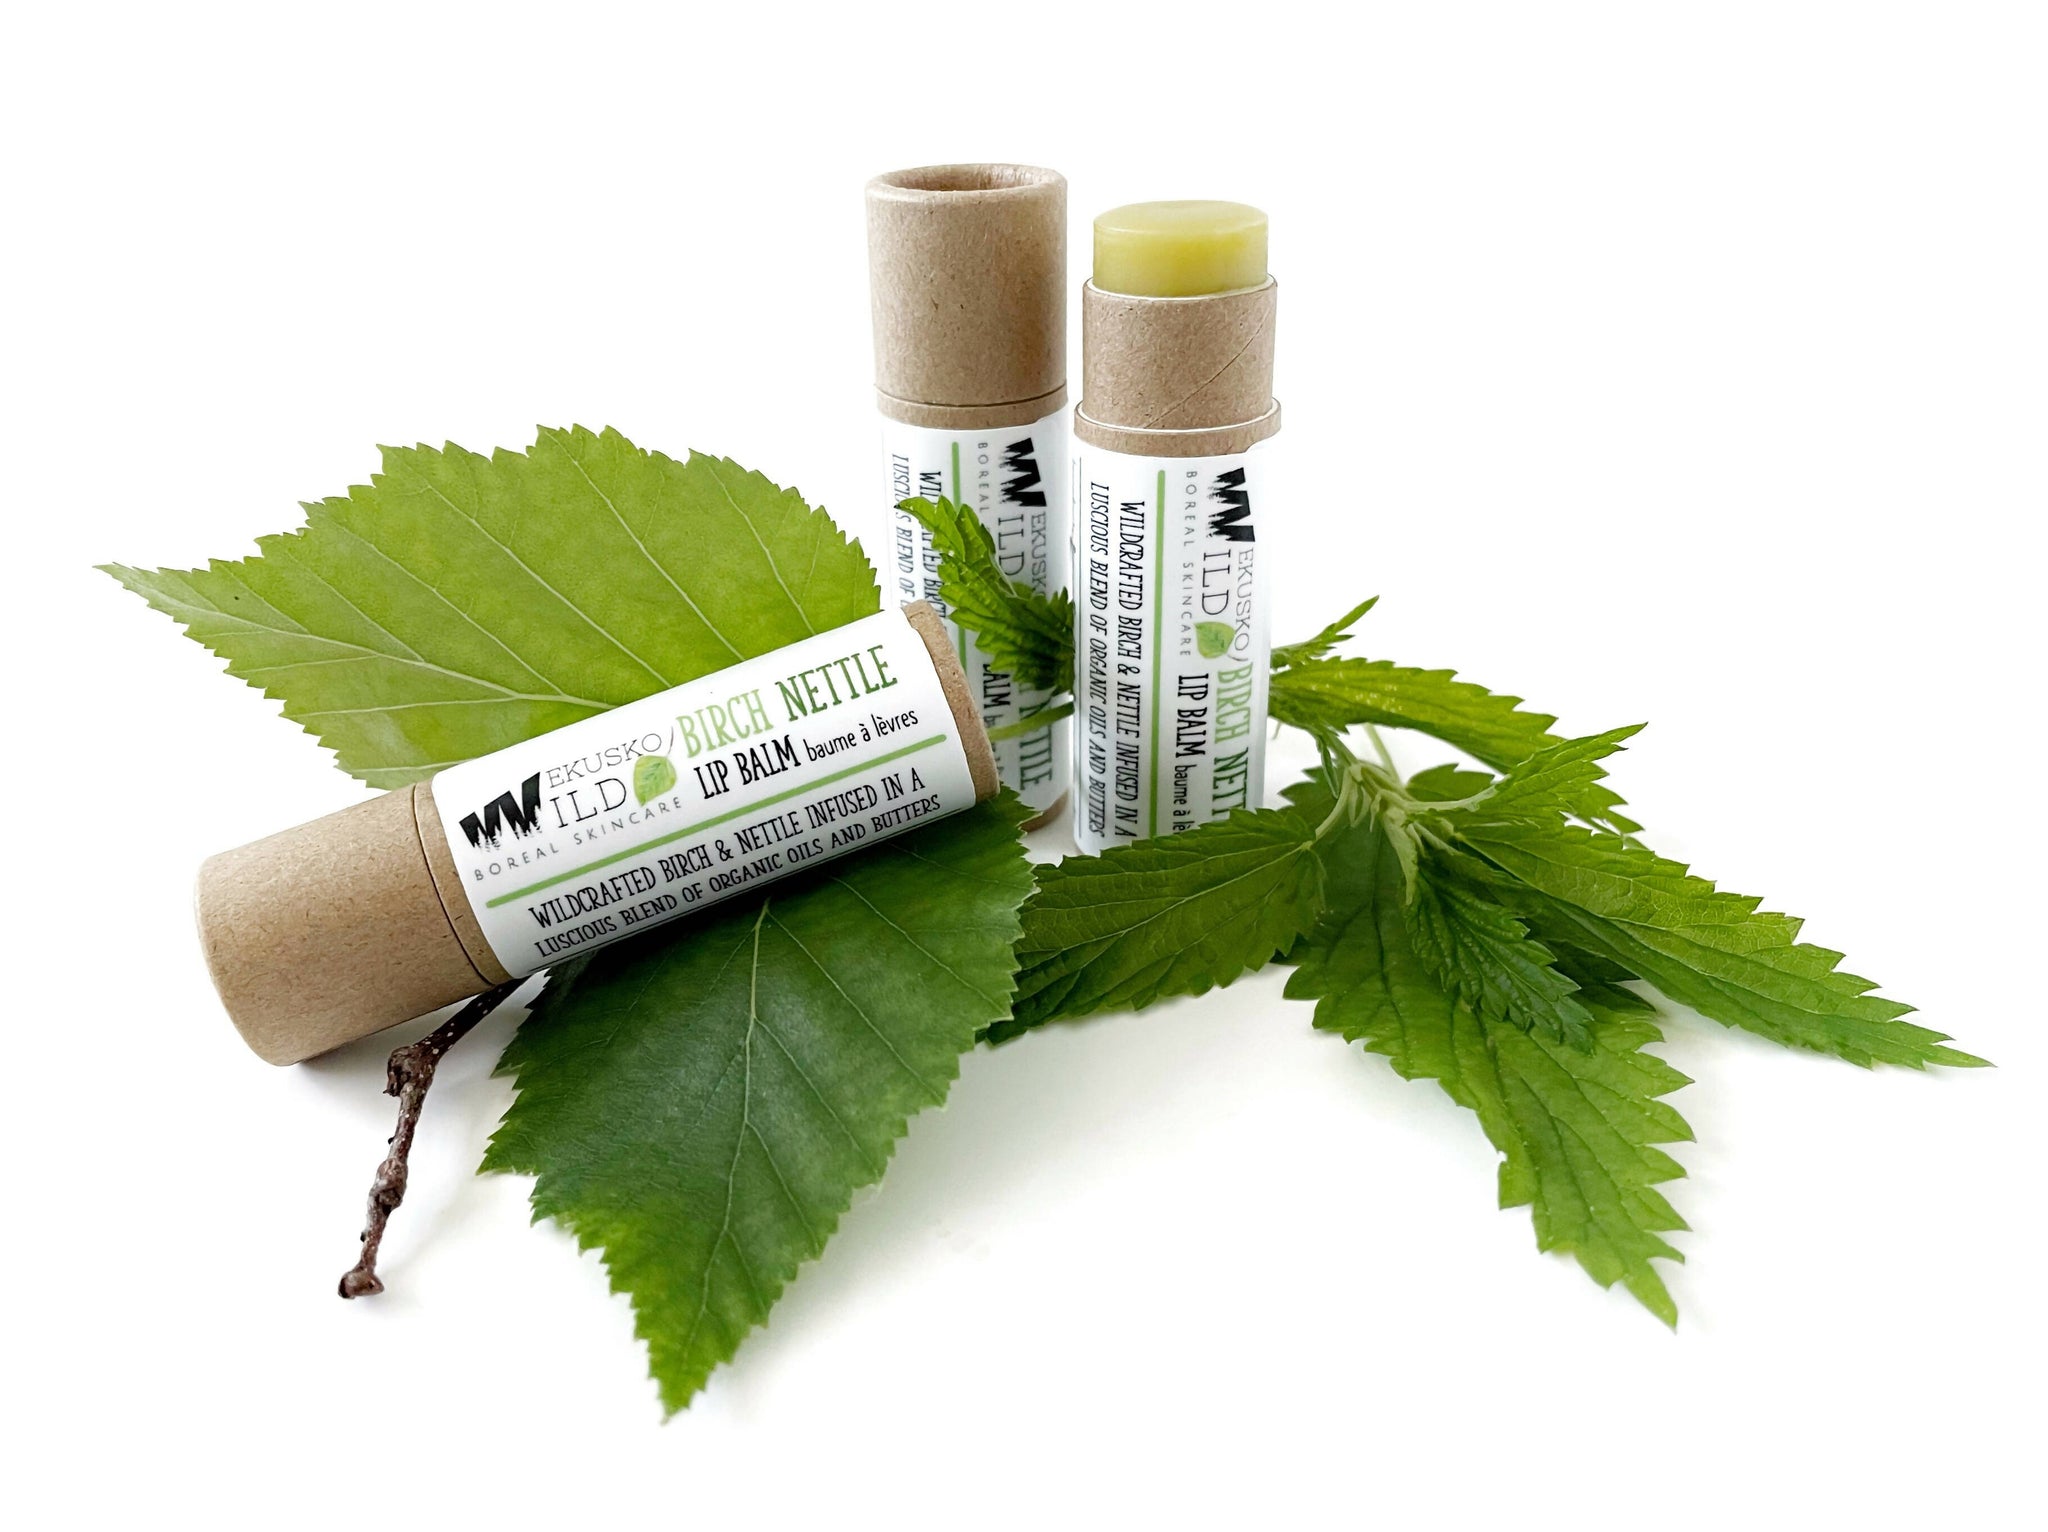 birch-nettle-lipbalm-wekusko-wild-natural-organic-skincare-1